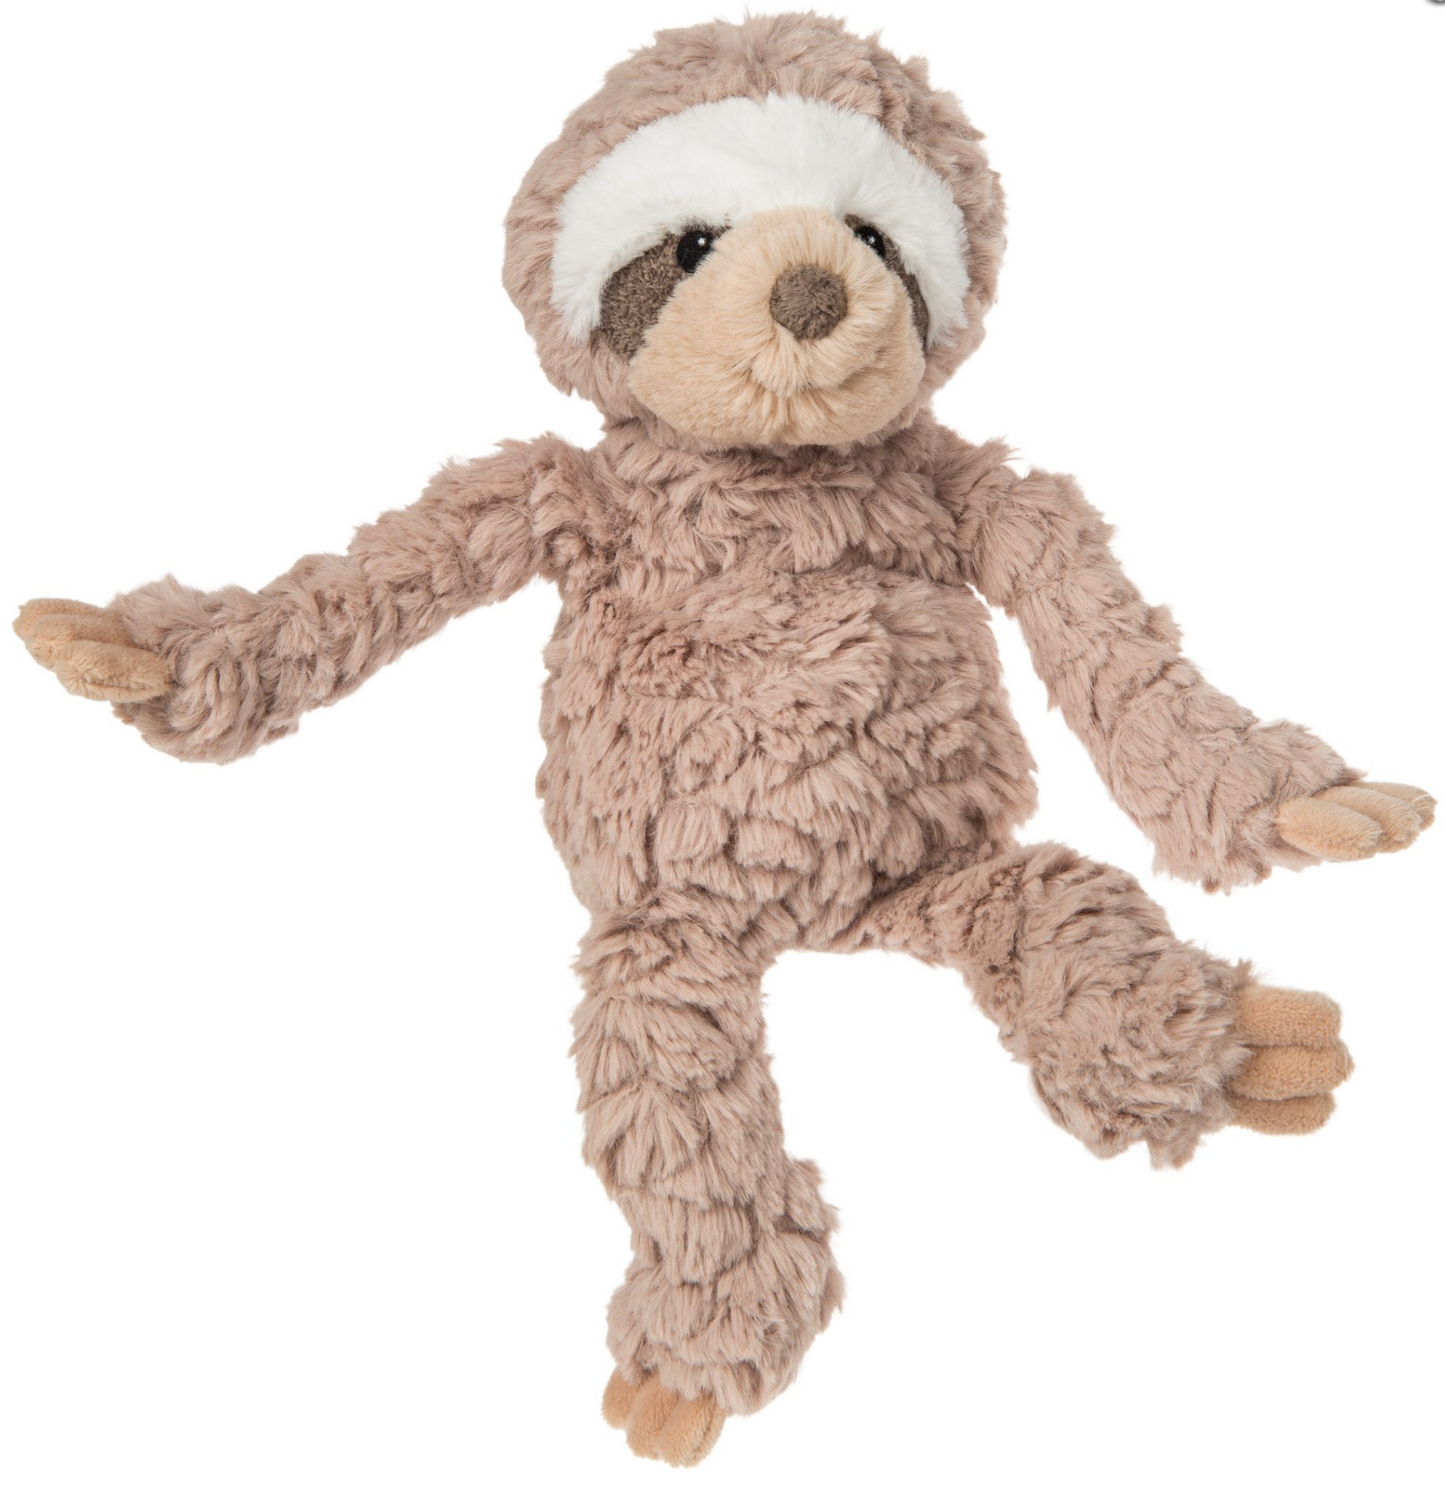 Nursery Sloth – 11″